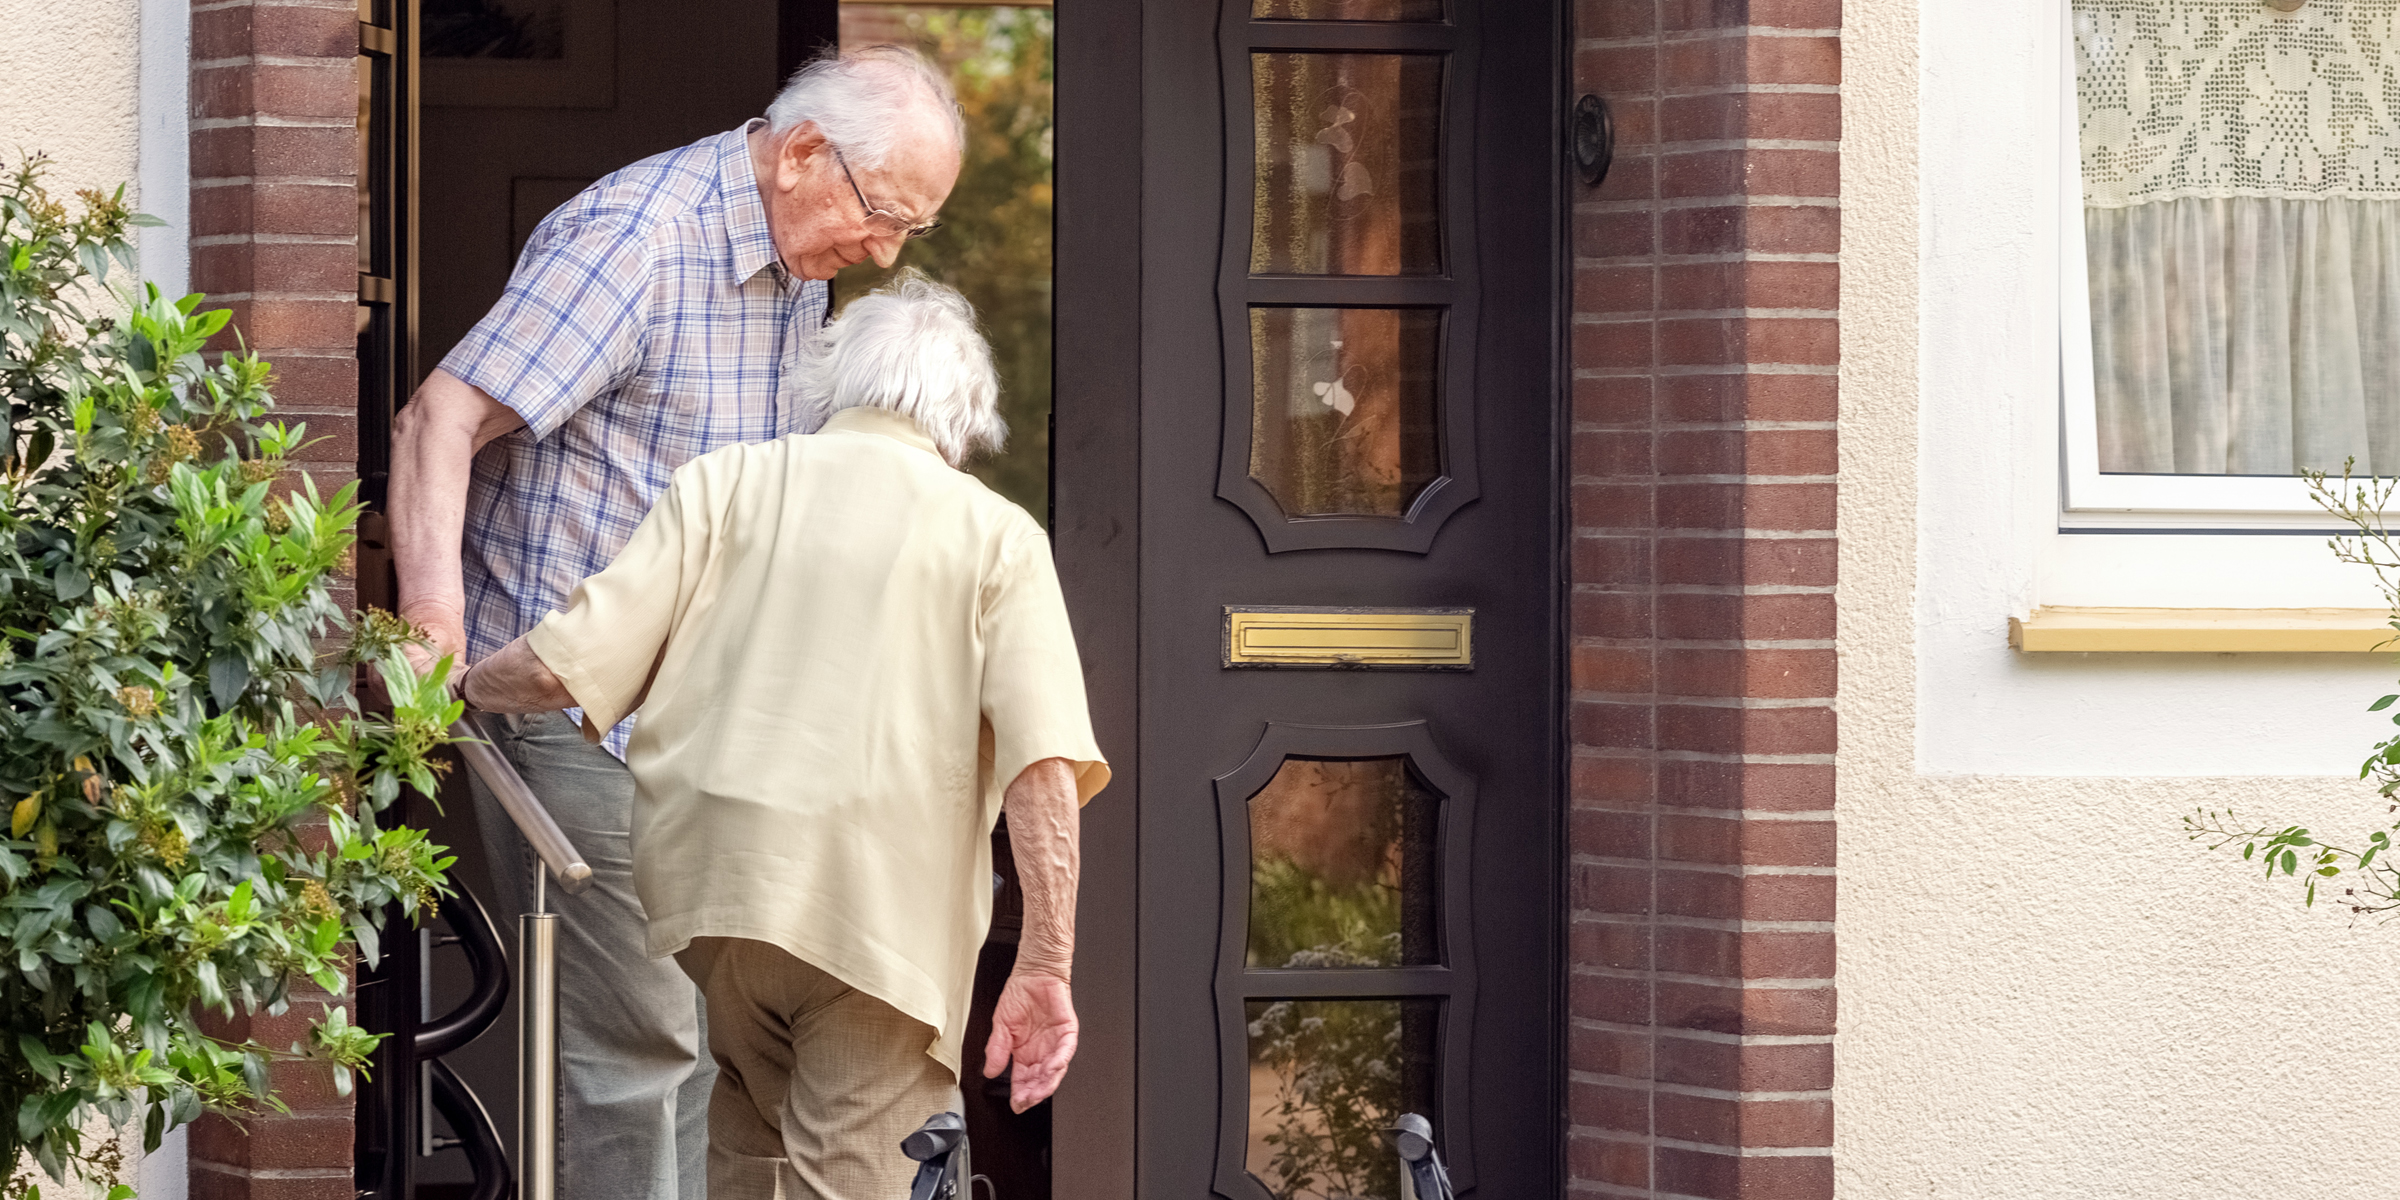 Una pareja de ancianos subiendo las escaleras | Fuente: Shutterstock